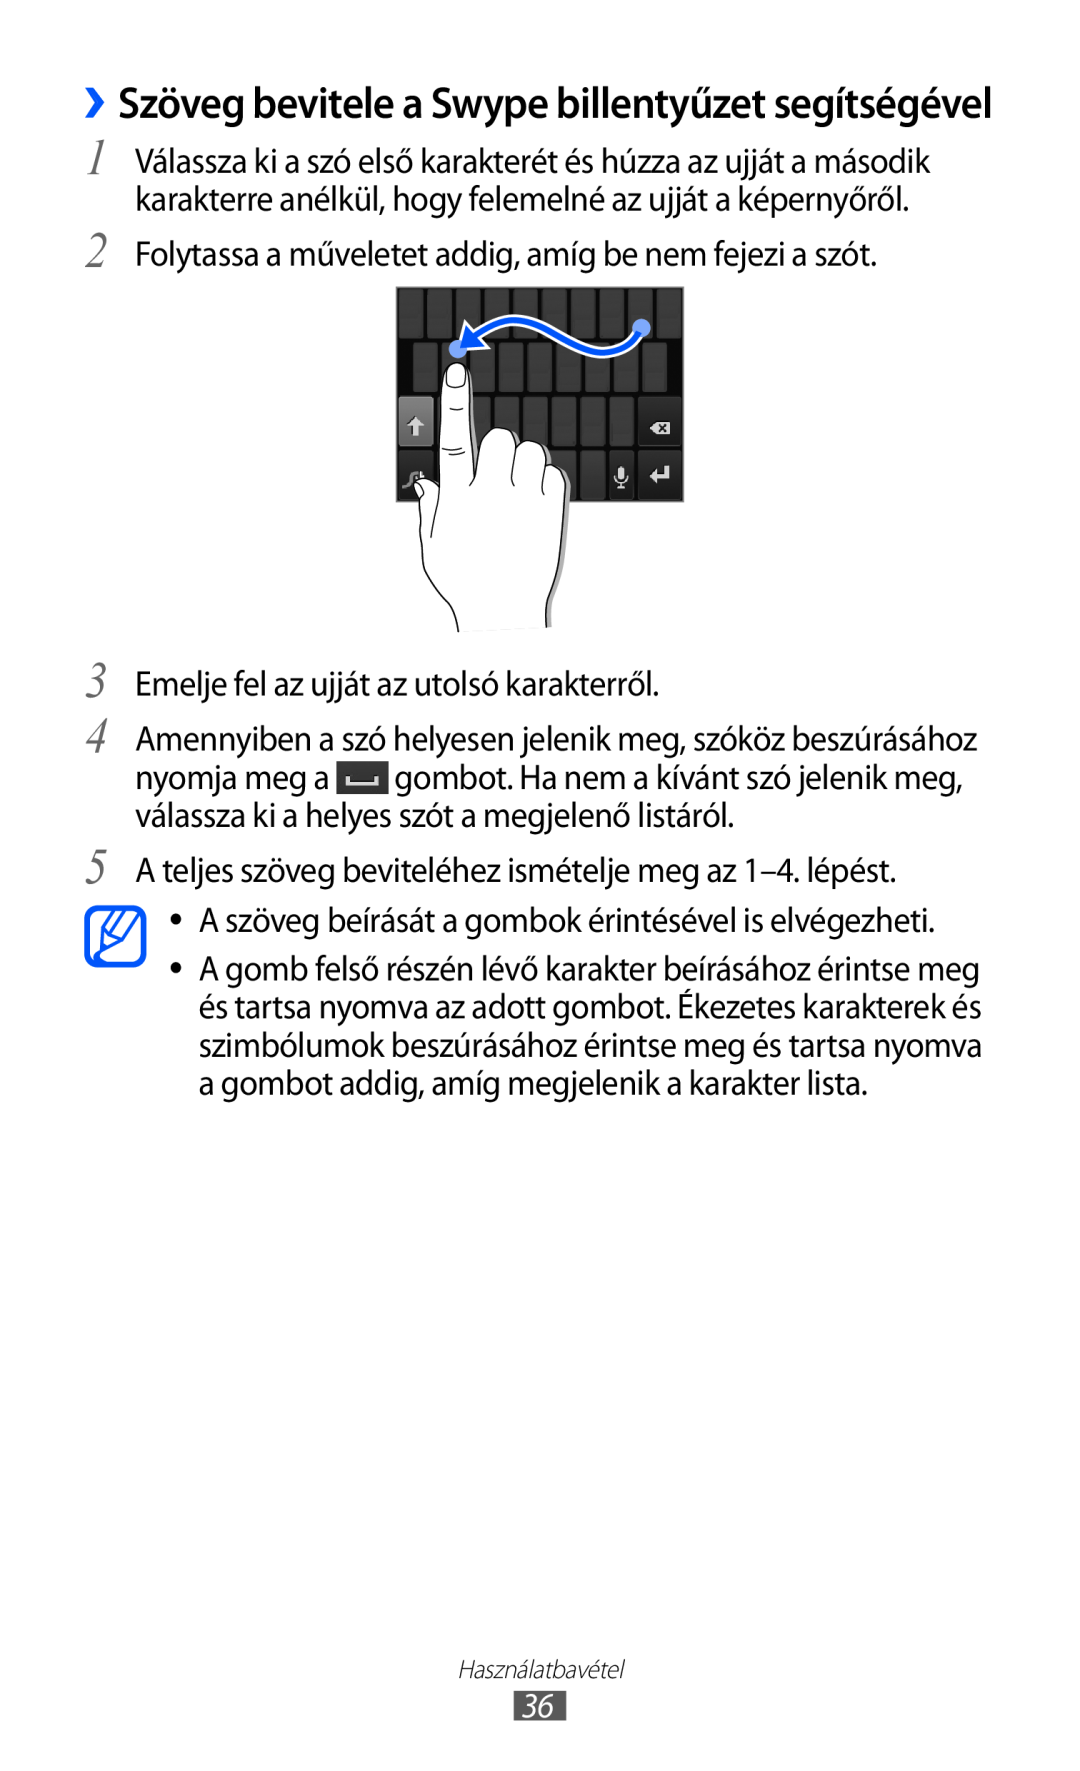 Samsung GT-S6500RWAVDH ››Szöveg bevitele a Swype billentyűzet segítségével, Emelje fel az ujját az utolsó karakterről 